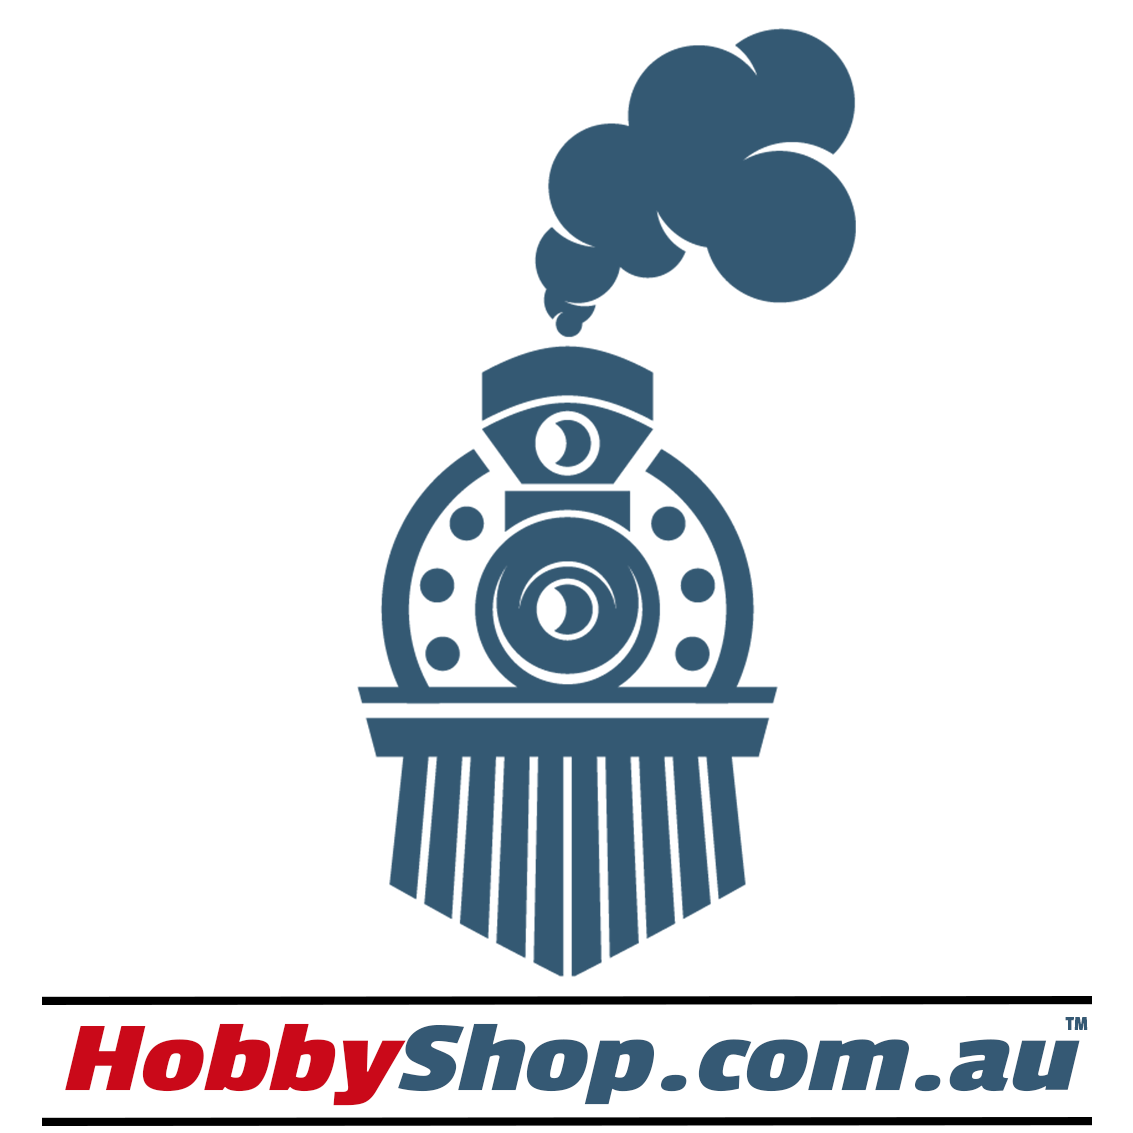 HobbyShop.com.au